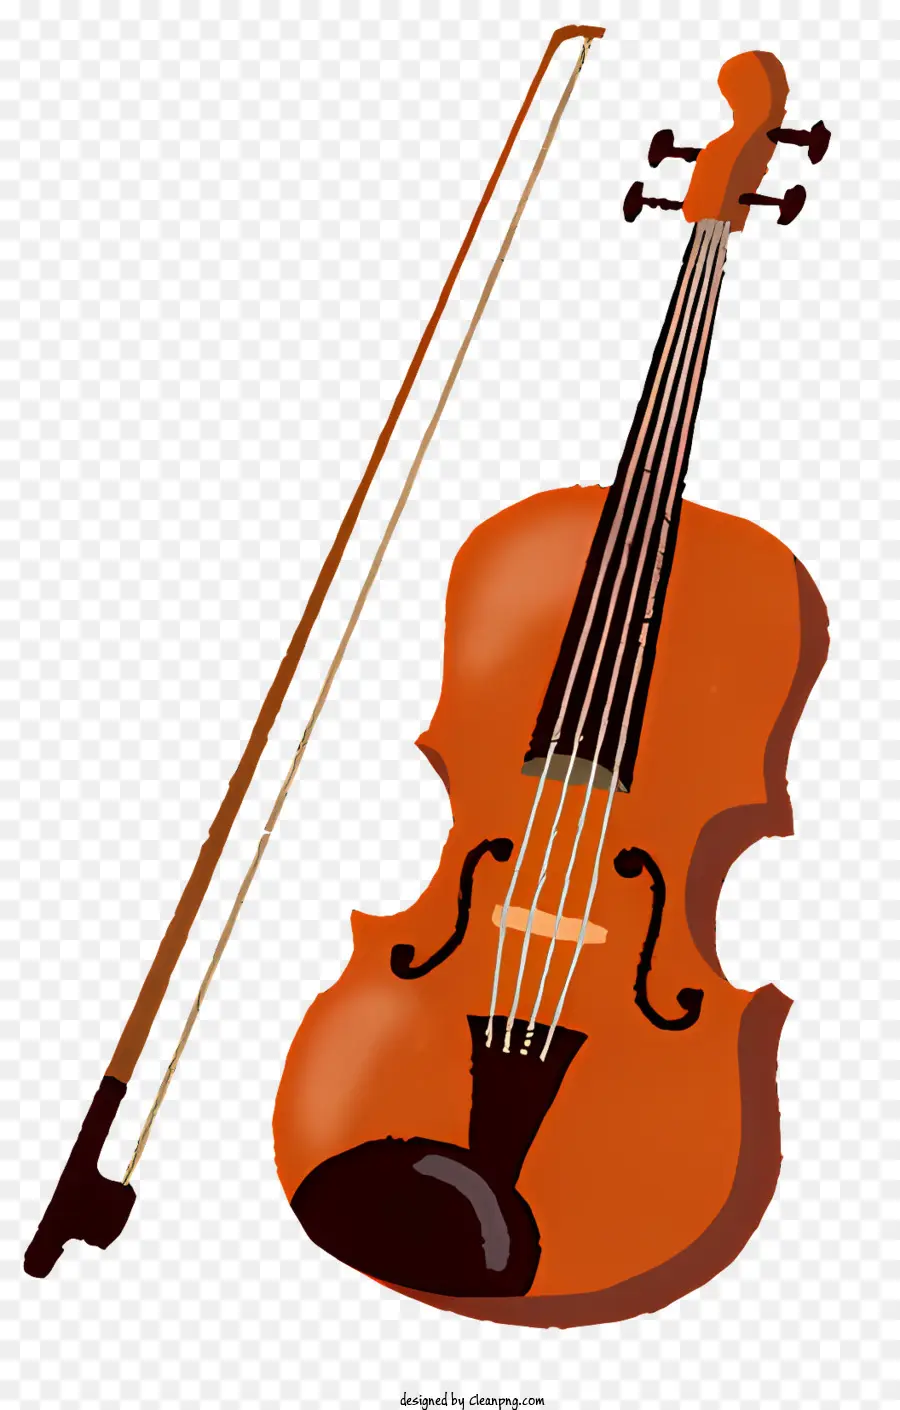 âm nhạc violin violin bằng cây vĩ cầm violin với cây đàn violin cong - Cây vĩ cầm màu cam với các bản khắc phức tạp và cung lông ngựa